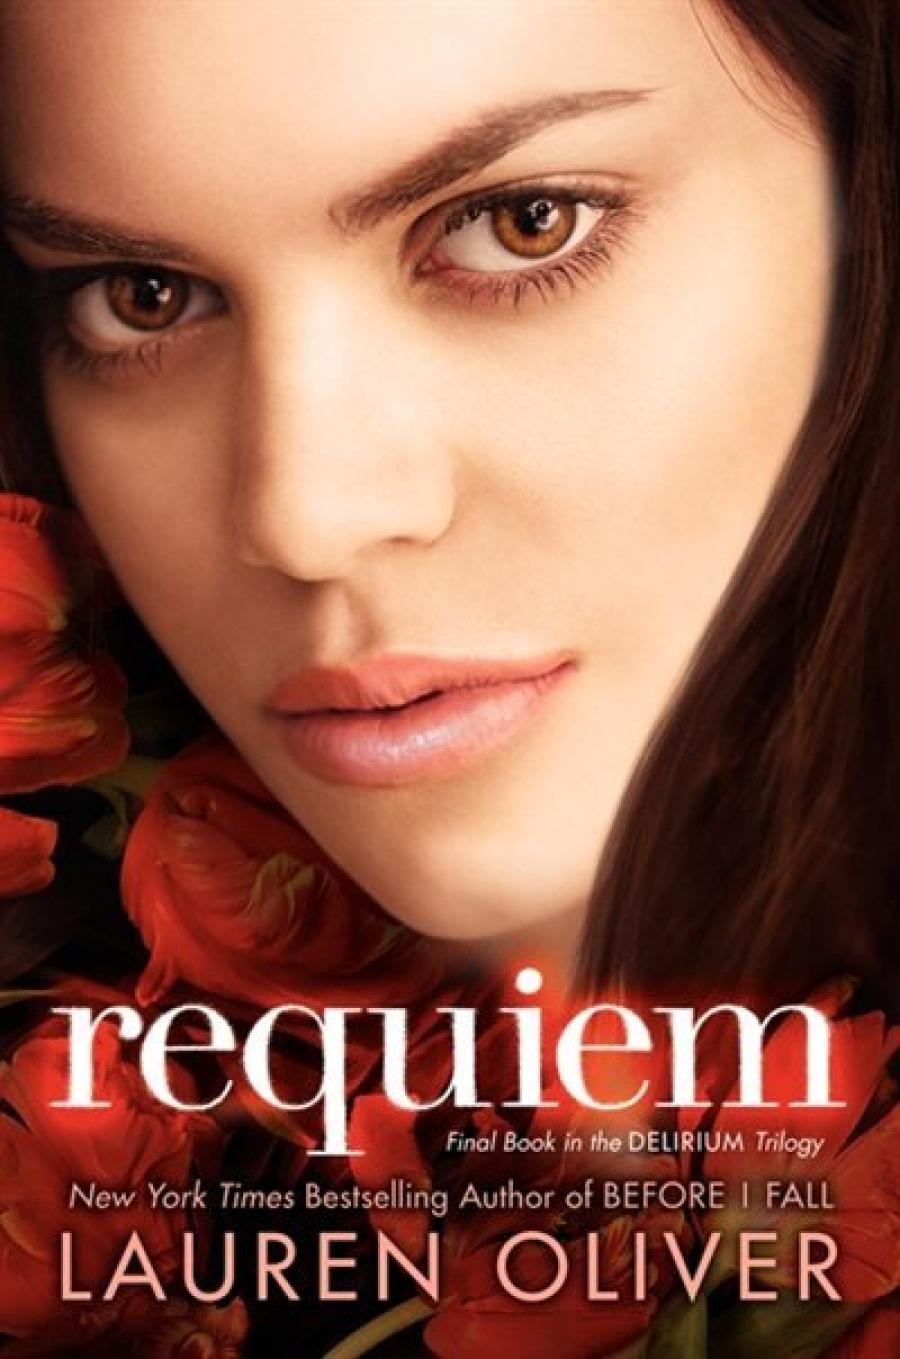 Reseña: Requiem (Delirium #III) - Lauren Oliver